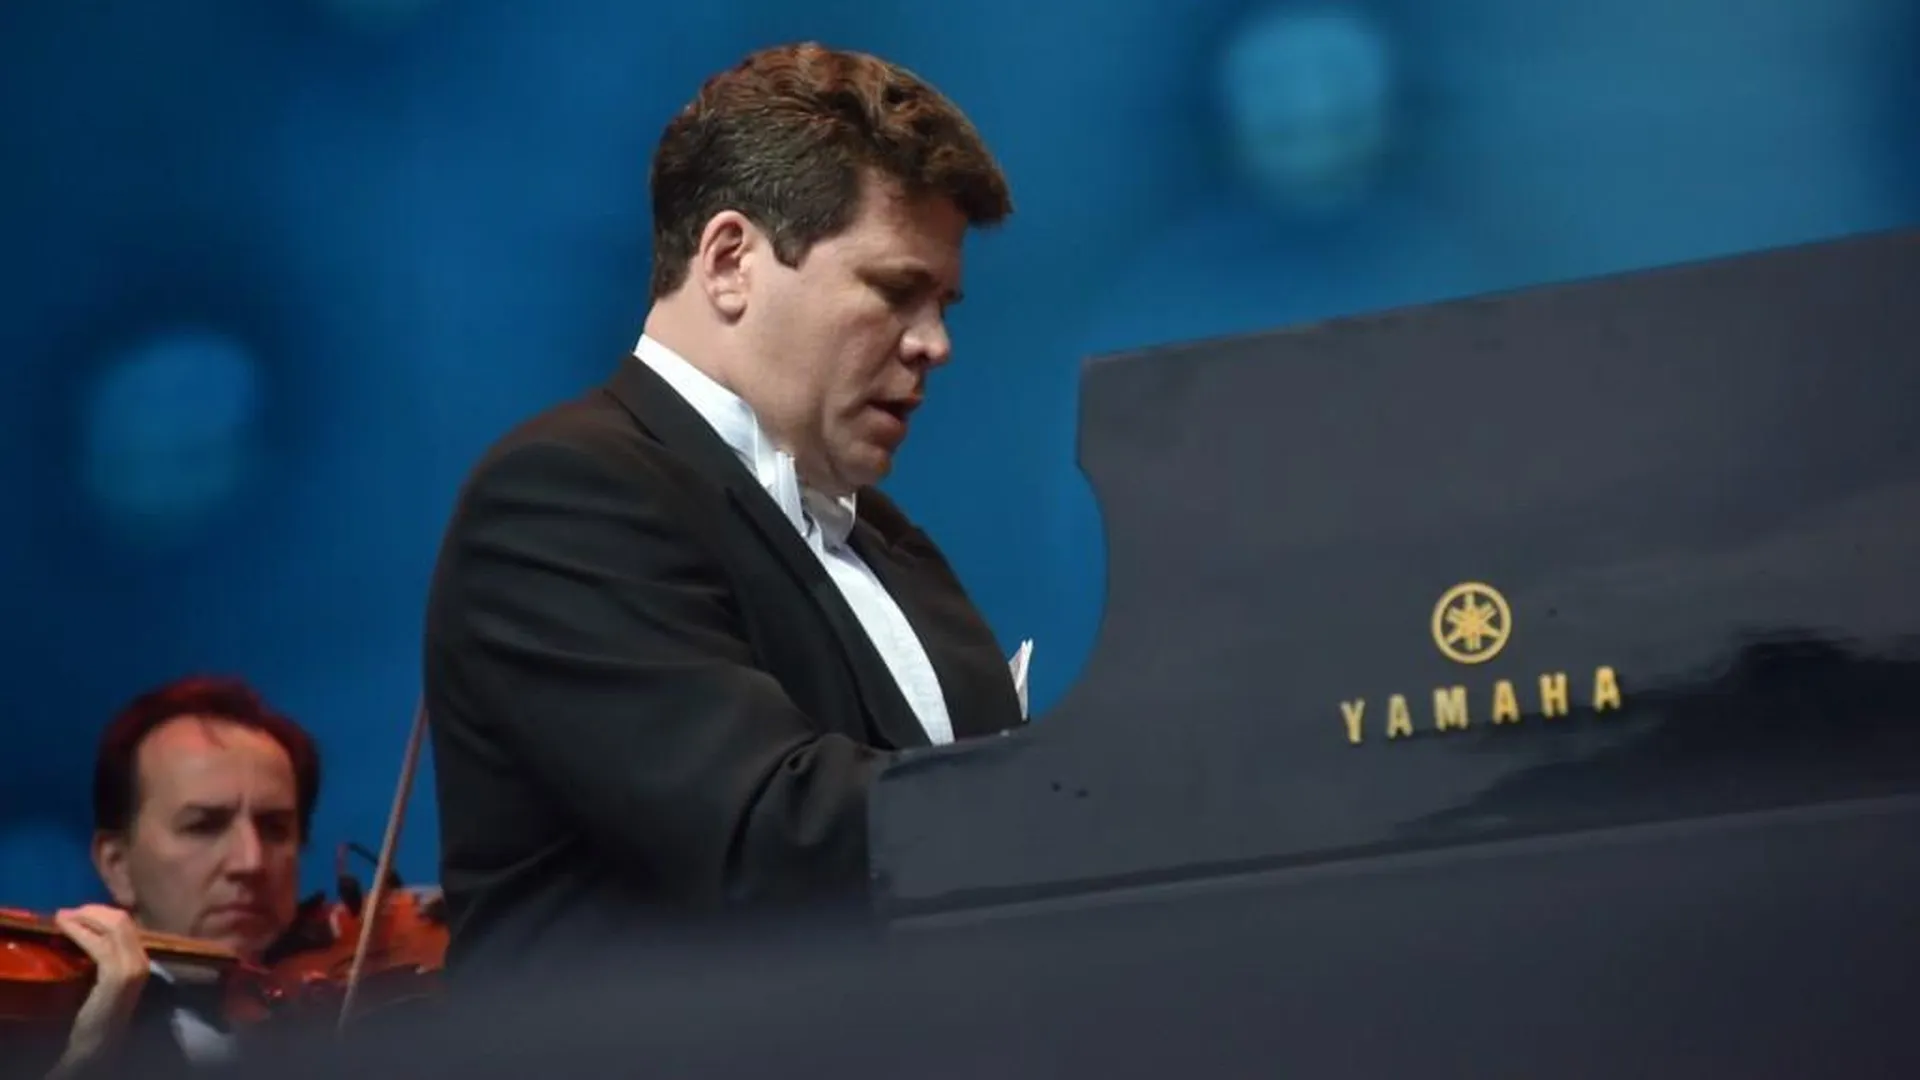 В честь Международного дня музыки пианист Денис Мацуев выступит в Кремле